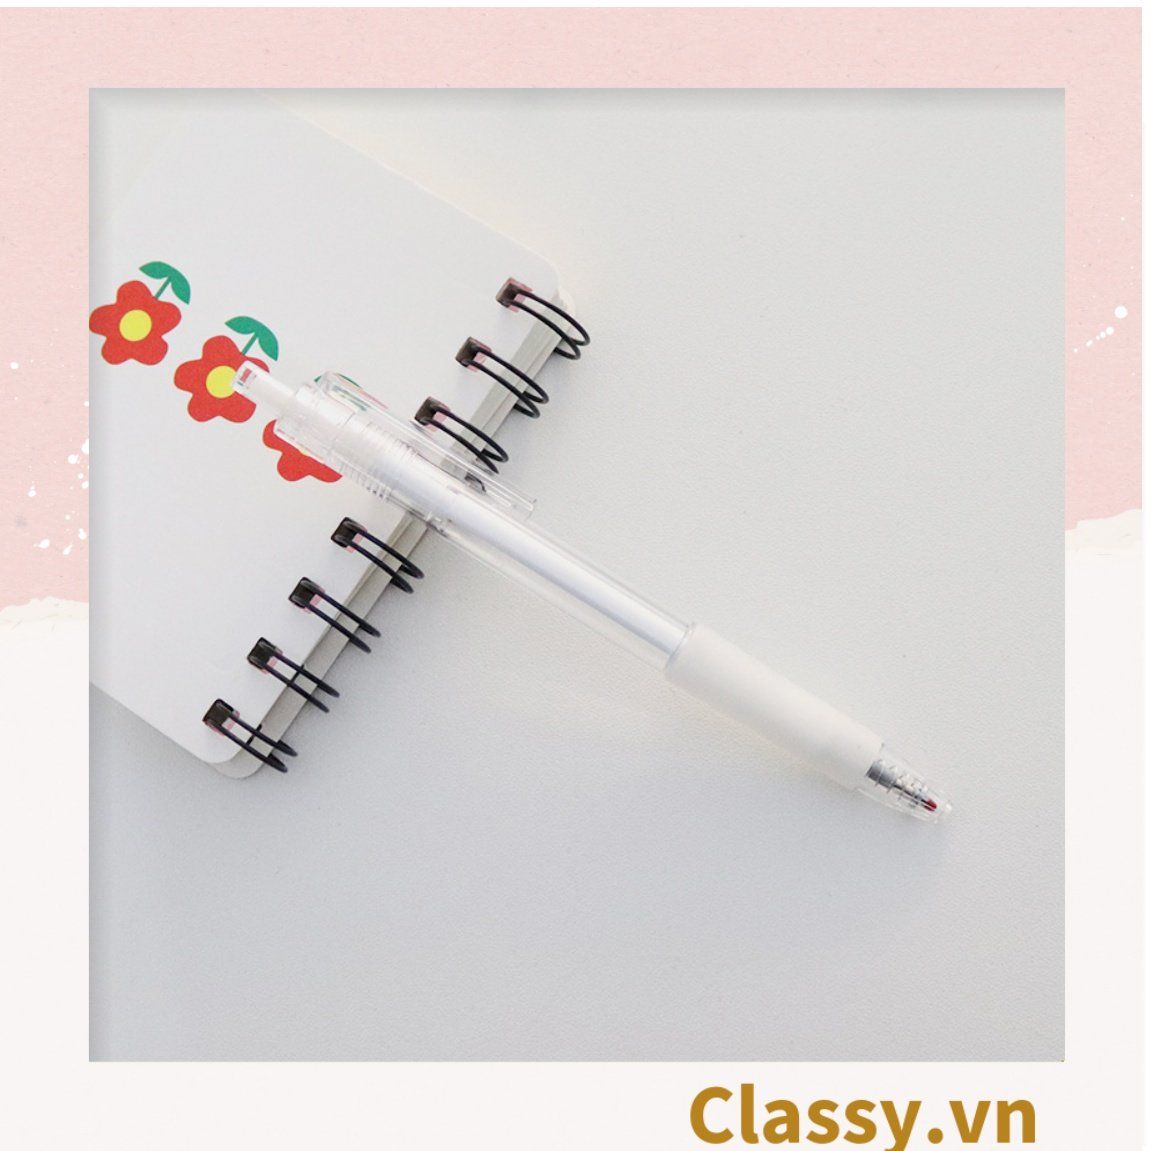 Classy Bút bi mực đen trơn màu cơ bản có miếng đệm tay giảm đau tay khi sử dụng lâu PK1650